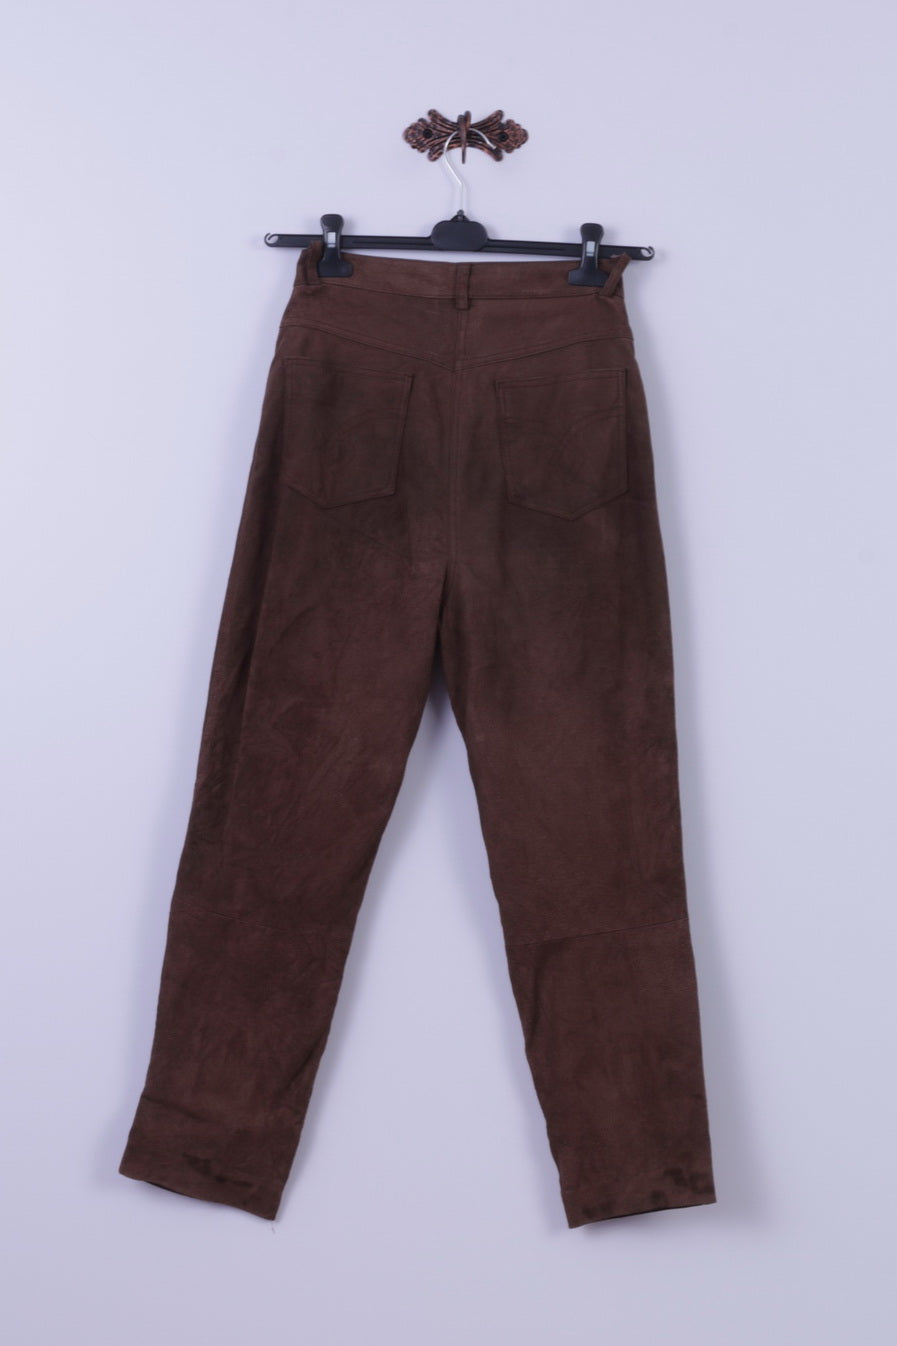 Style File Pantalon 10 S pour femme Marron 100 % cuir suédé taille haute rétro